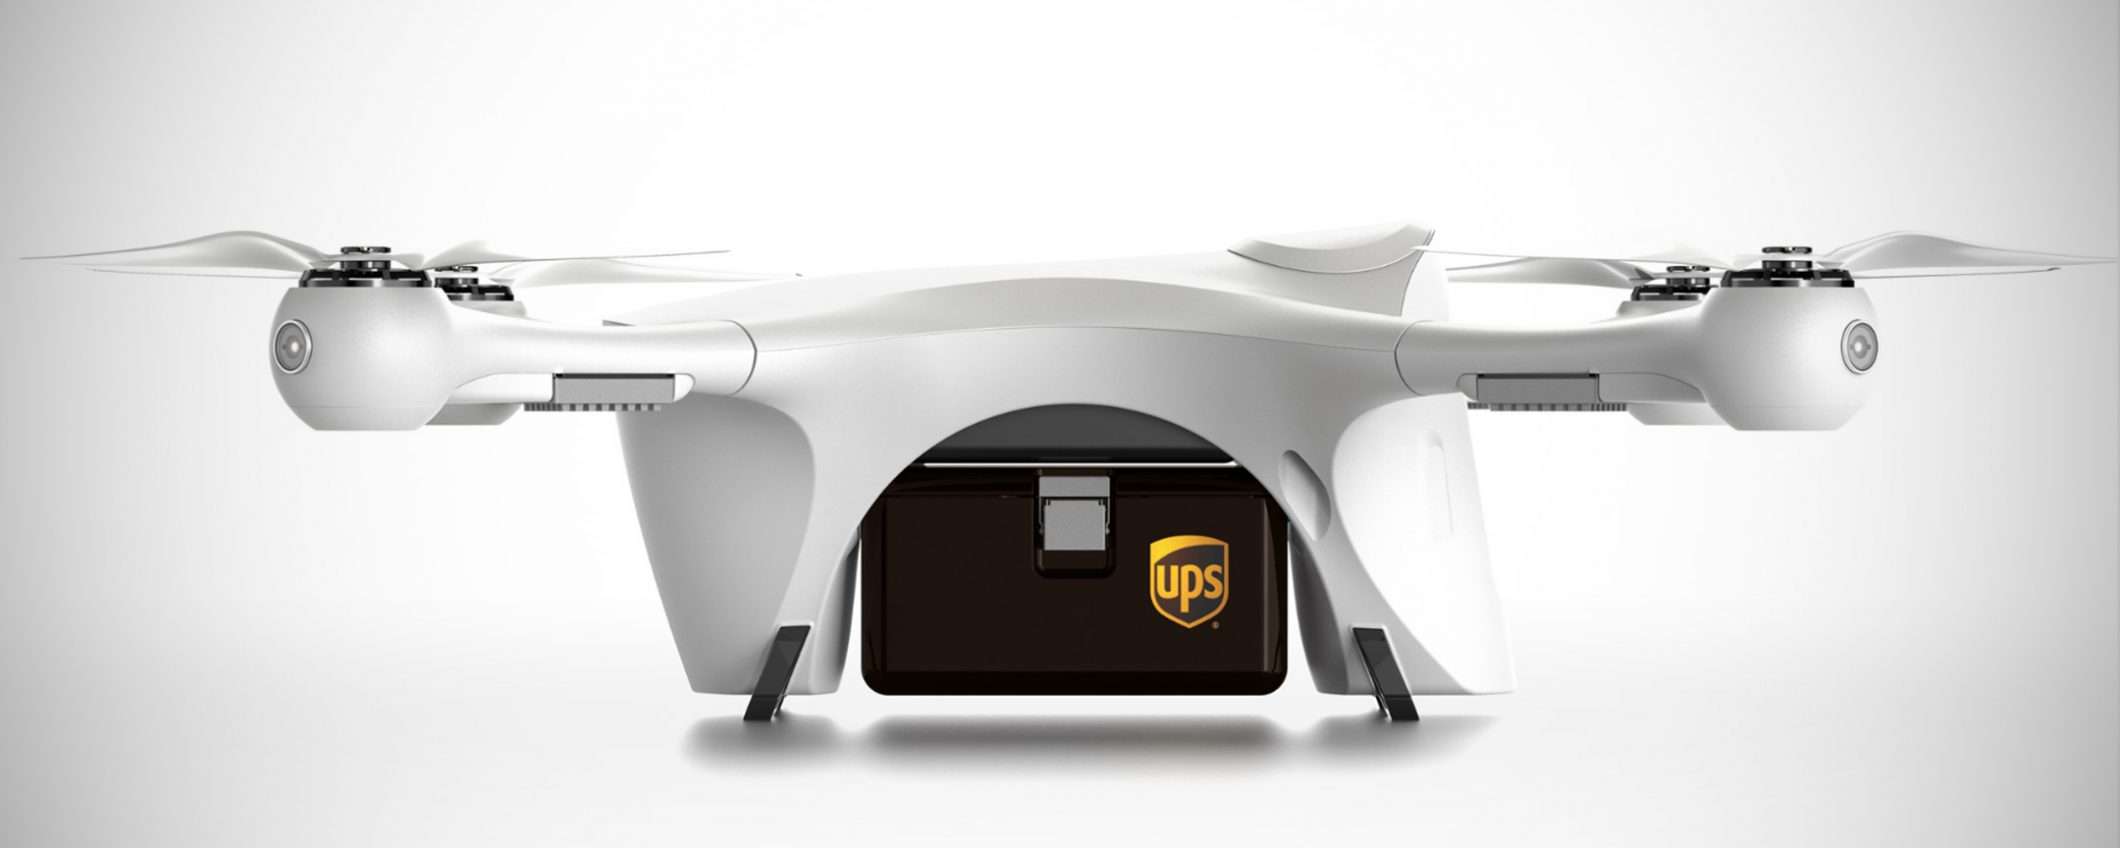 Anche UPS avrà i suoi droni per le consegne